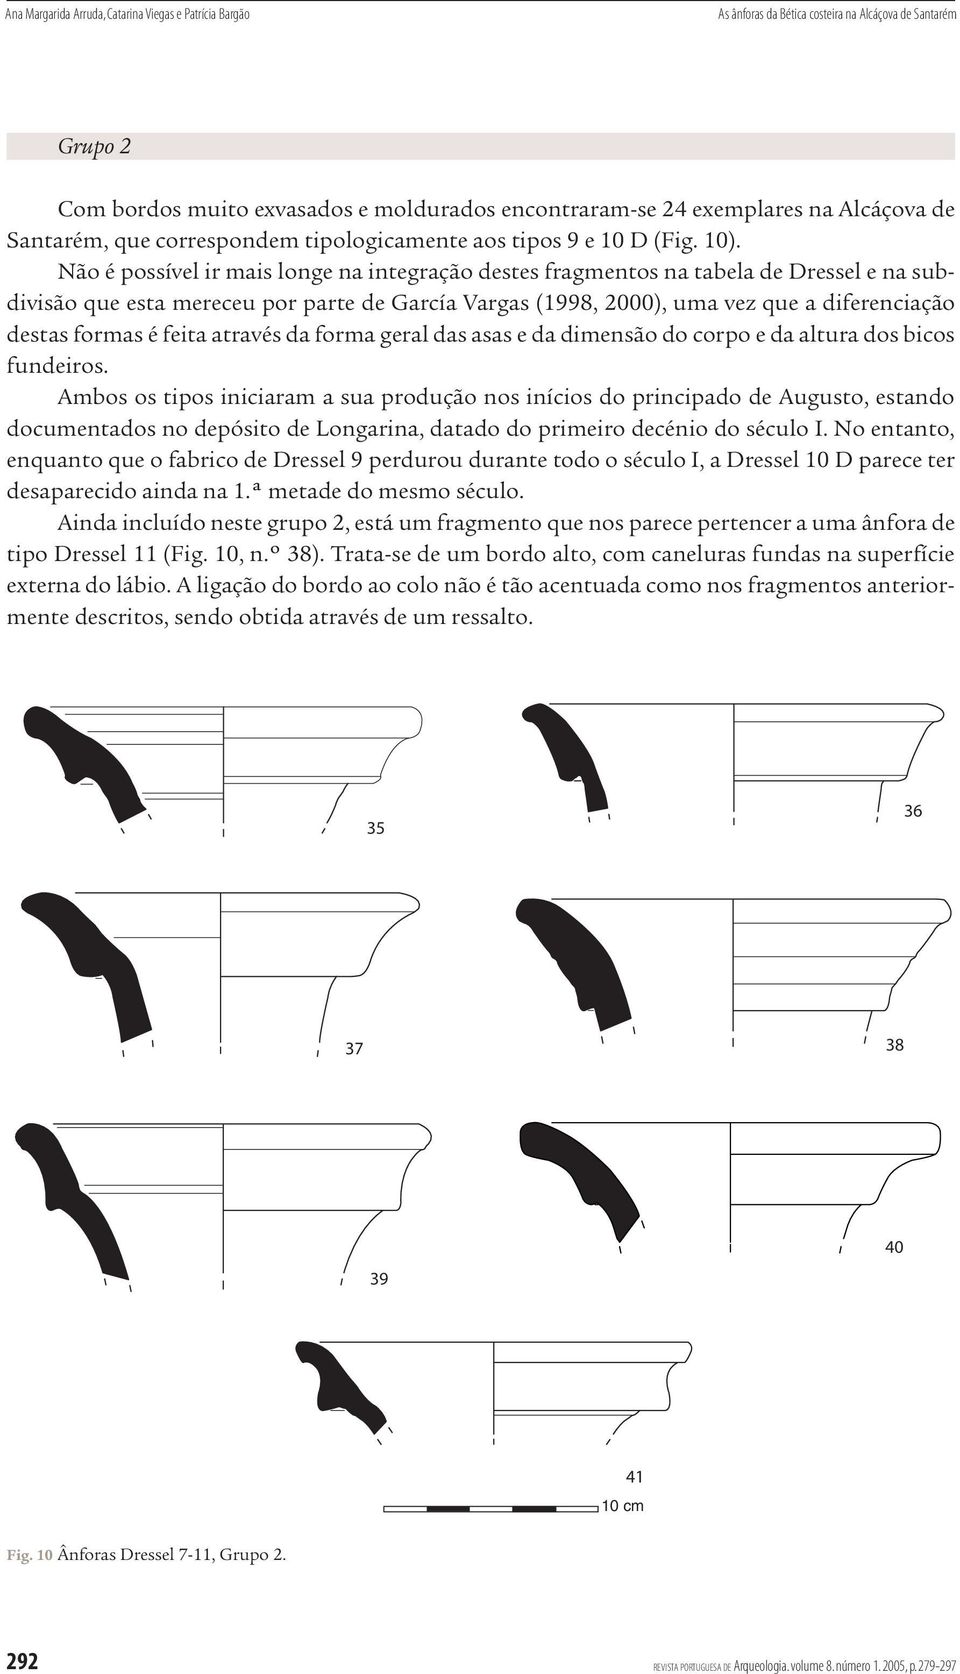 Não é possível ir mais longe na integração destes fragmentos na tabela de Dressel e na subdivisão que esta mereceu por parte de García Vargas (1998, 2000), uma vez que a diferenciação destas formas é